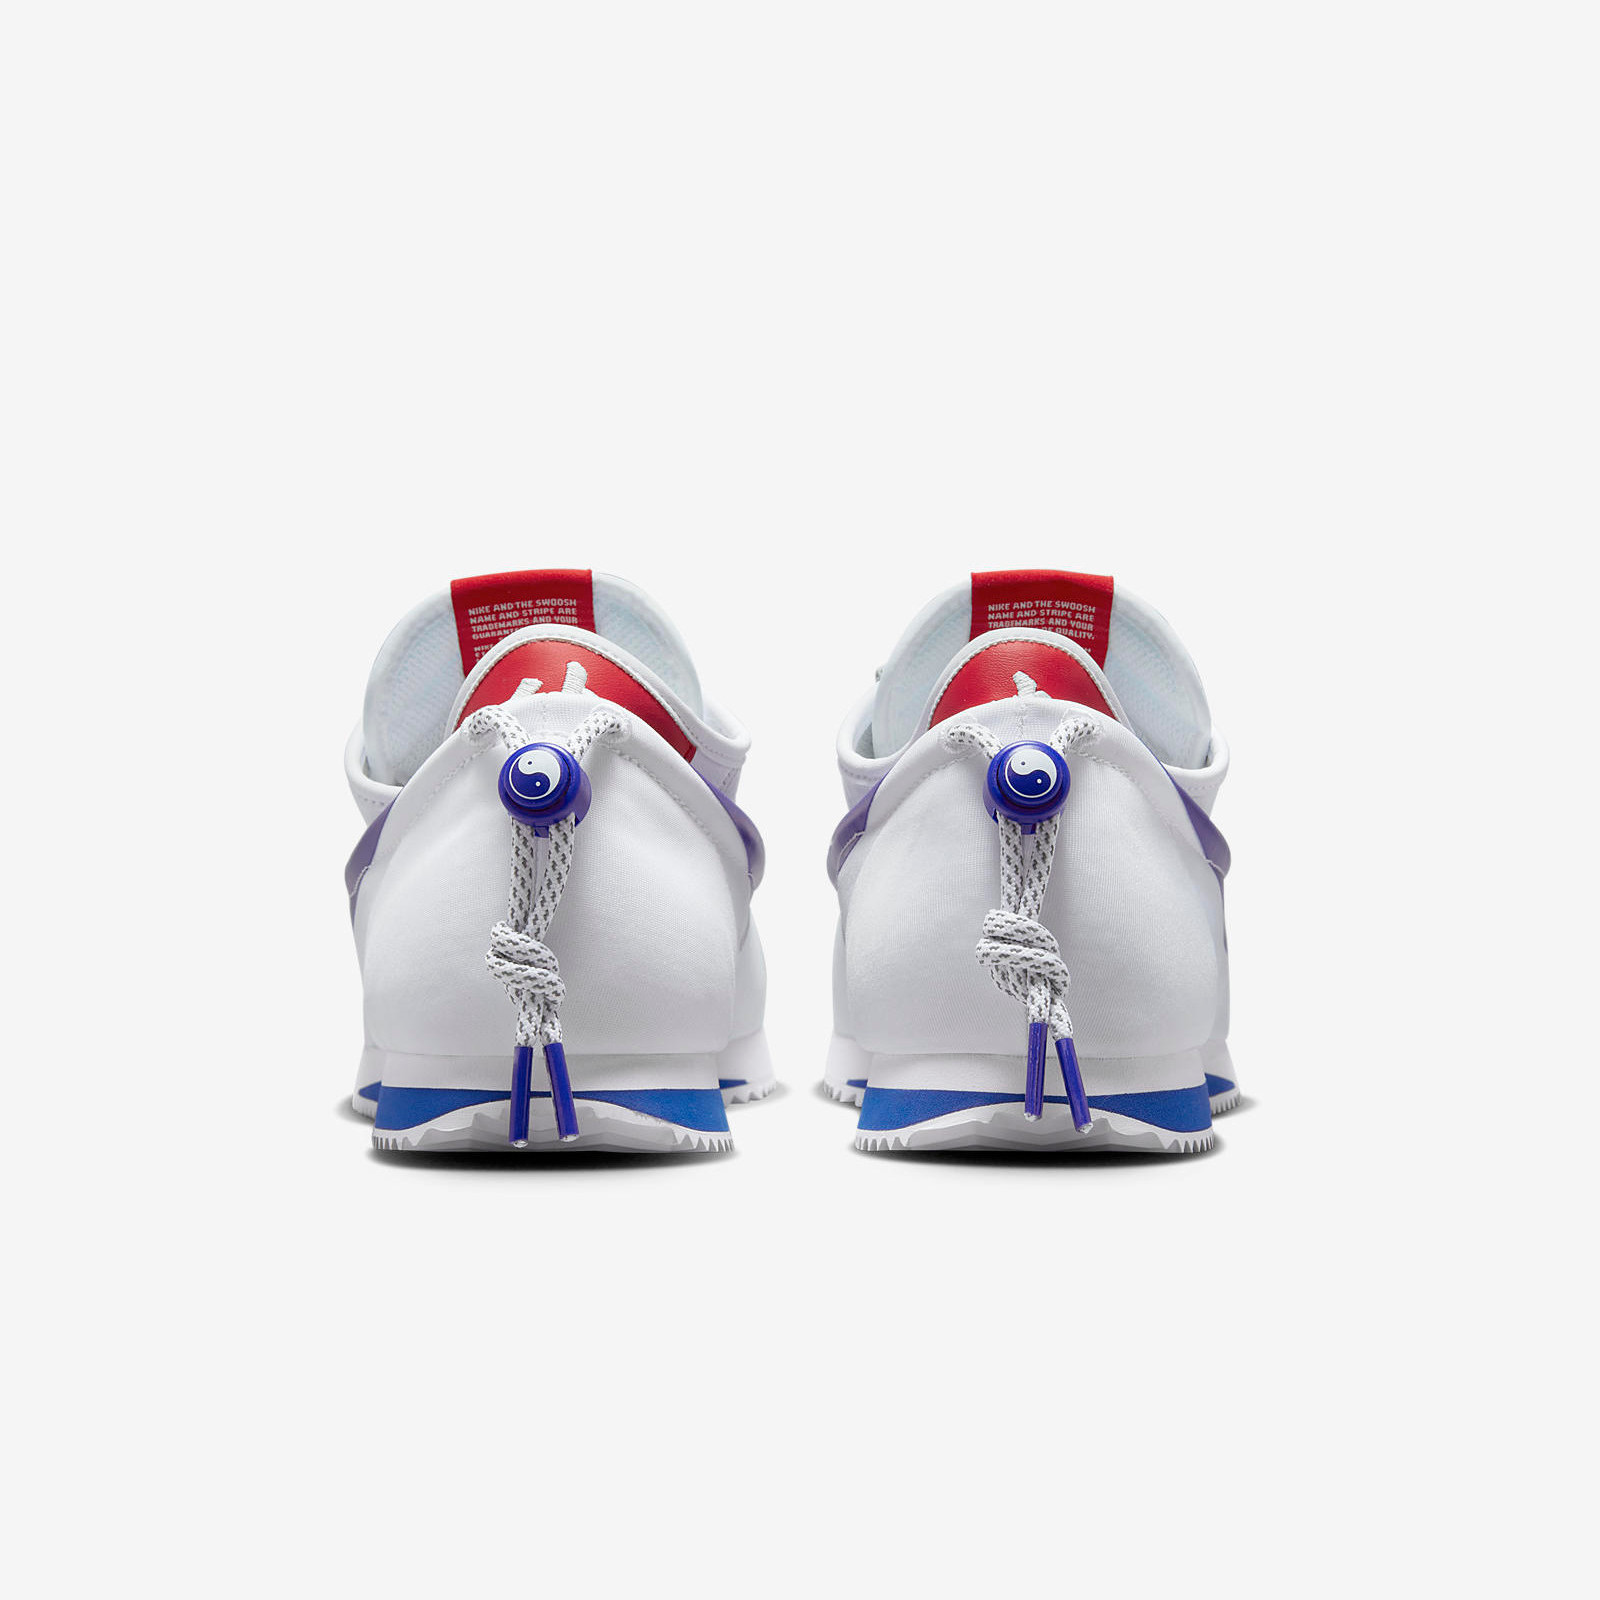 CLOT x Nike Cortez
White / Game Royal